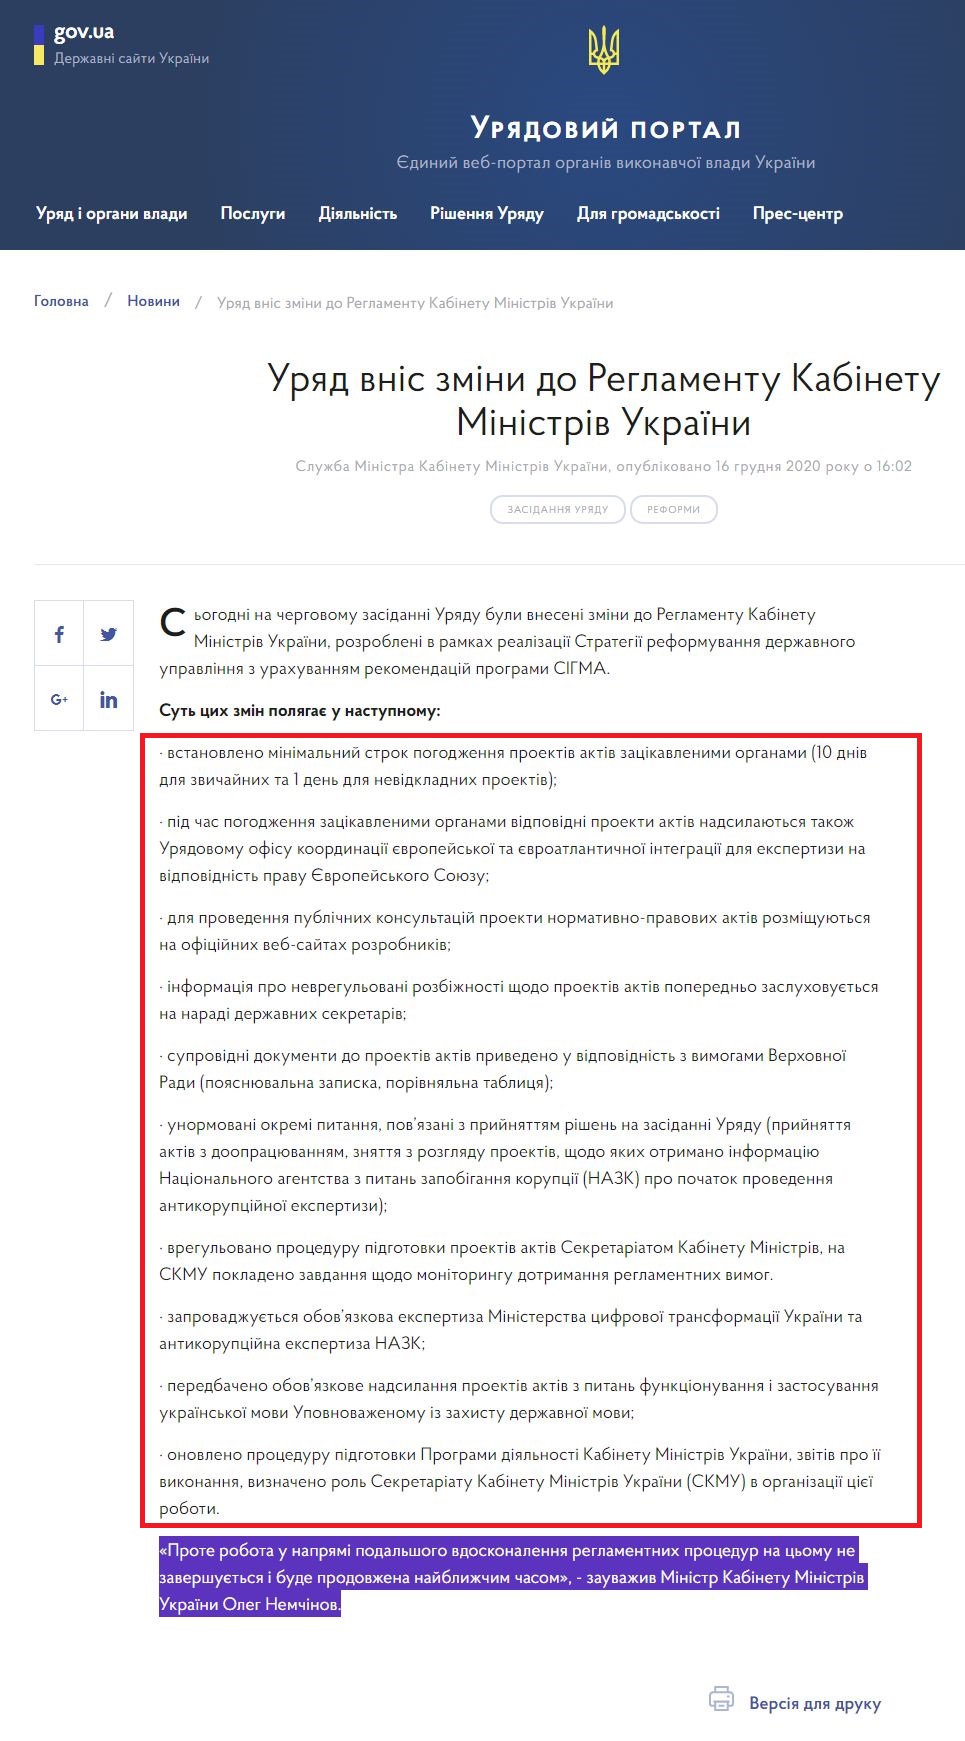 https://www.kmu.gov.ua/news/uryad-vnis-zmini-do-reglamentu-kmu